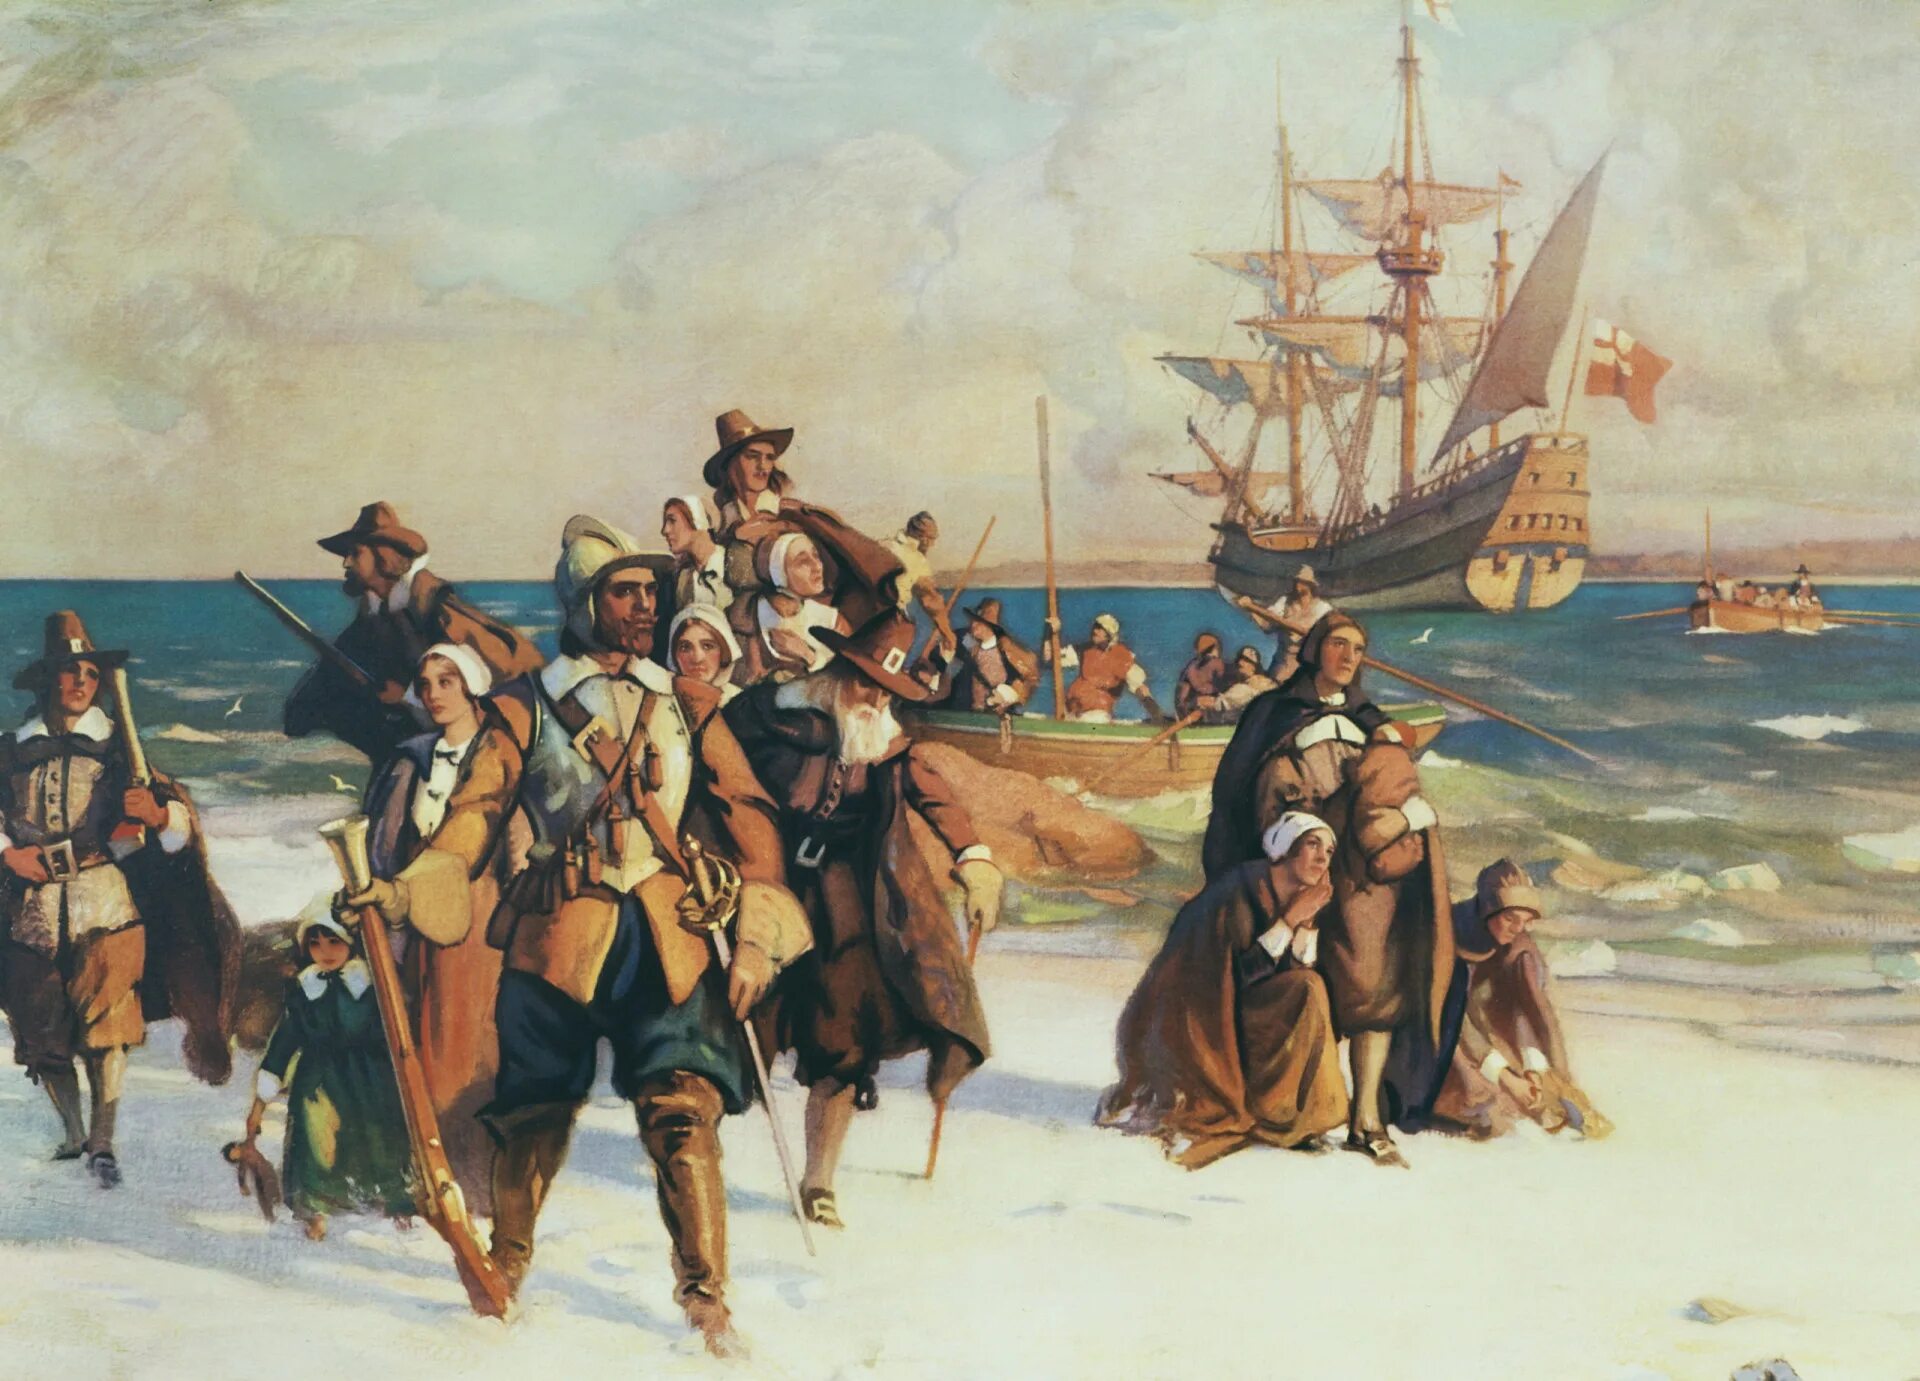 Мэйфлауэр Пилигримы. Пилигримы Плимута Массачусетс. Корабль пилигримов Mayflower. Pilgrims (Пилигримы).